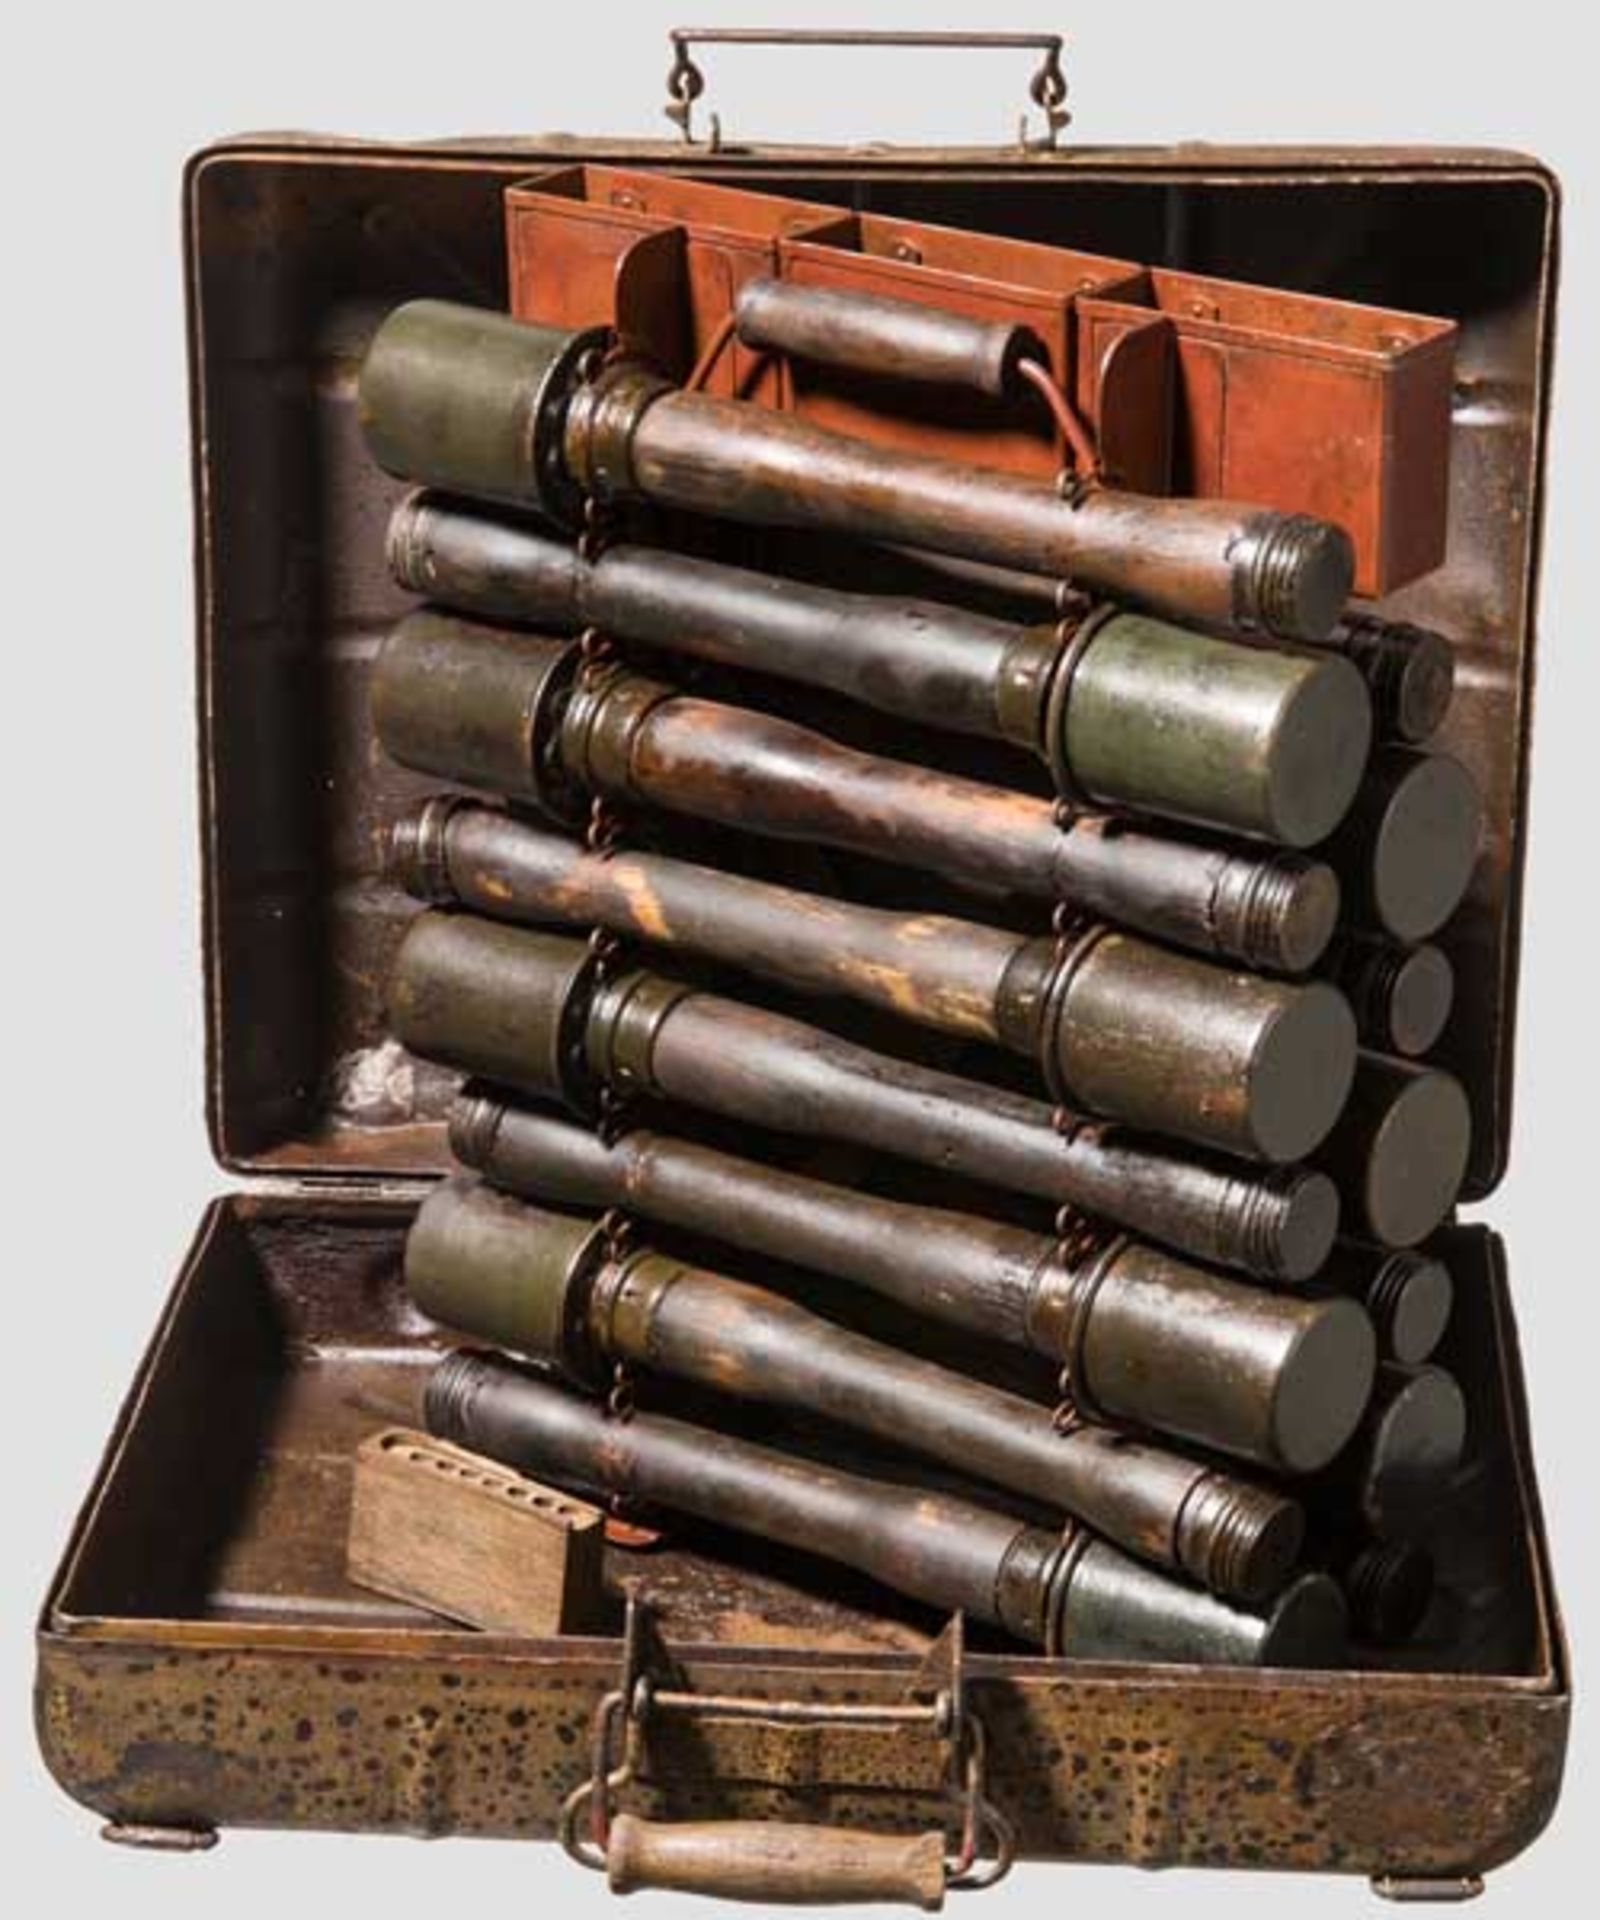 Handgranatenkoffer der Wehrmacht 15 deaktivierte Stielhandgranaten mit Stempel "wc 1944" (Hugo